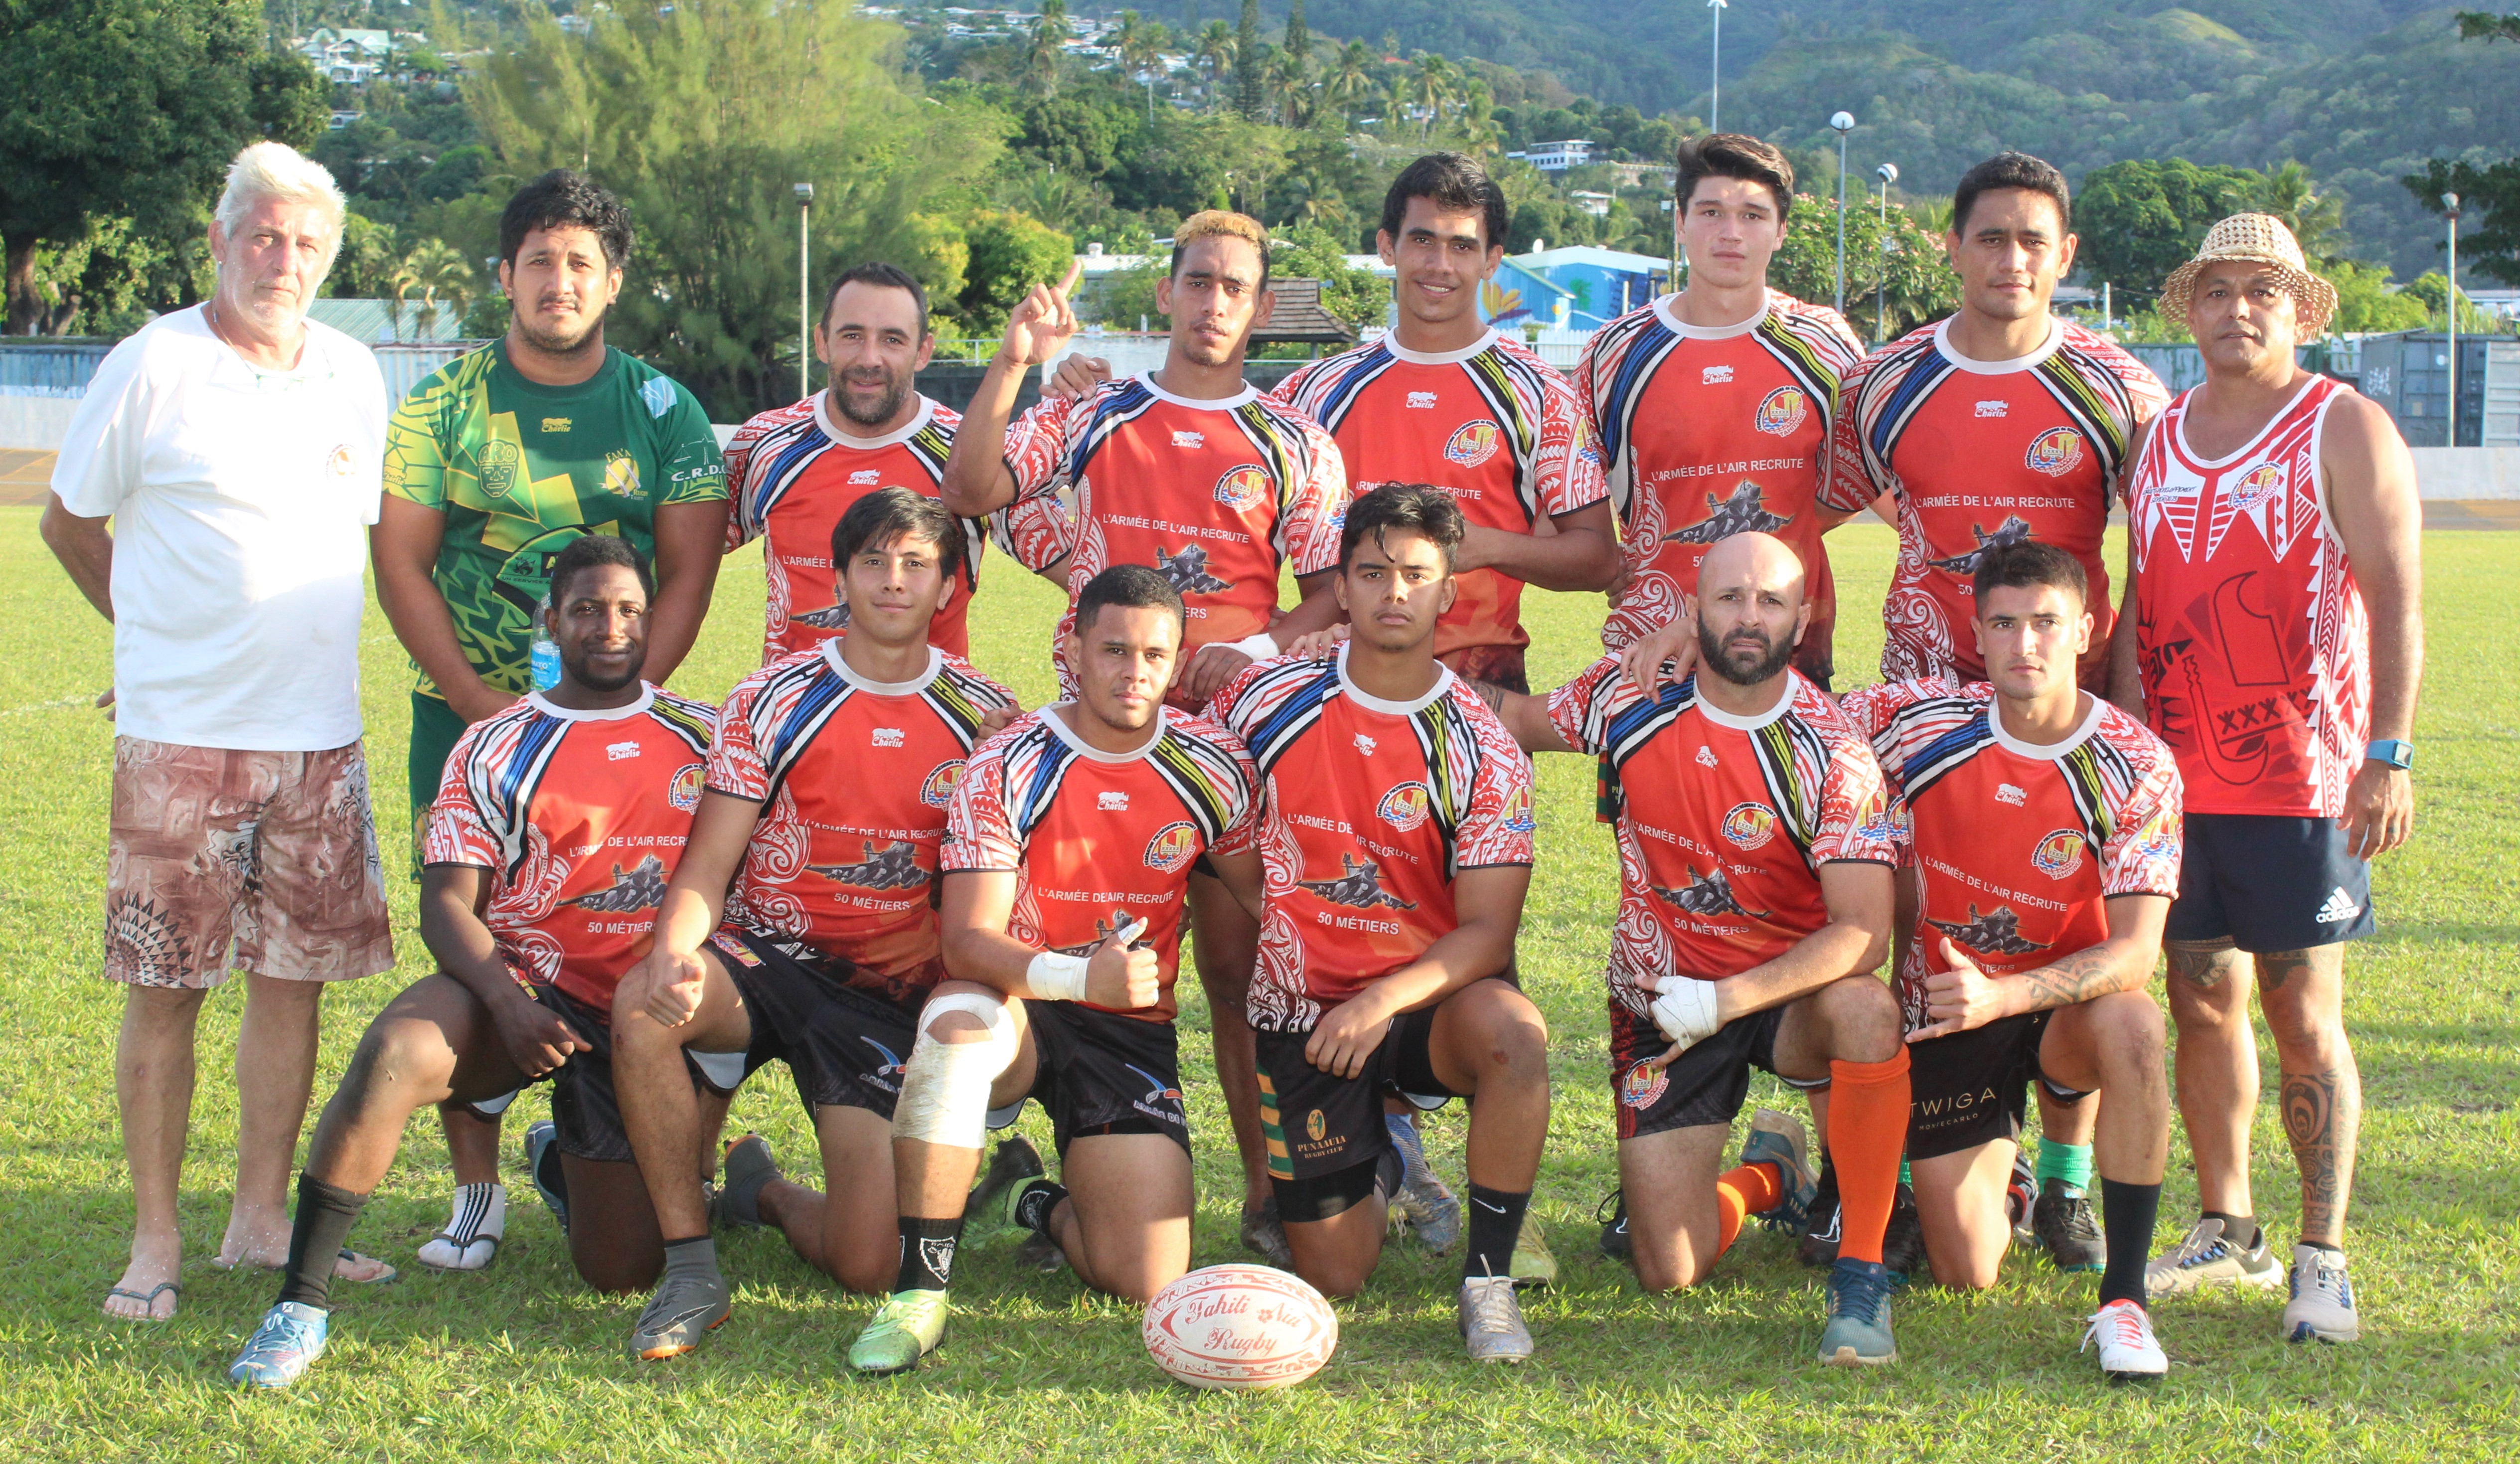 La sélection tahitienne de rugby à 7 tentera d’être compétitive à Honiara dans un contexte très relevé compte tenu de la présence de pays qui évoluent au niveau mondial.